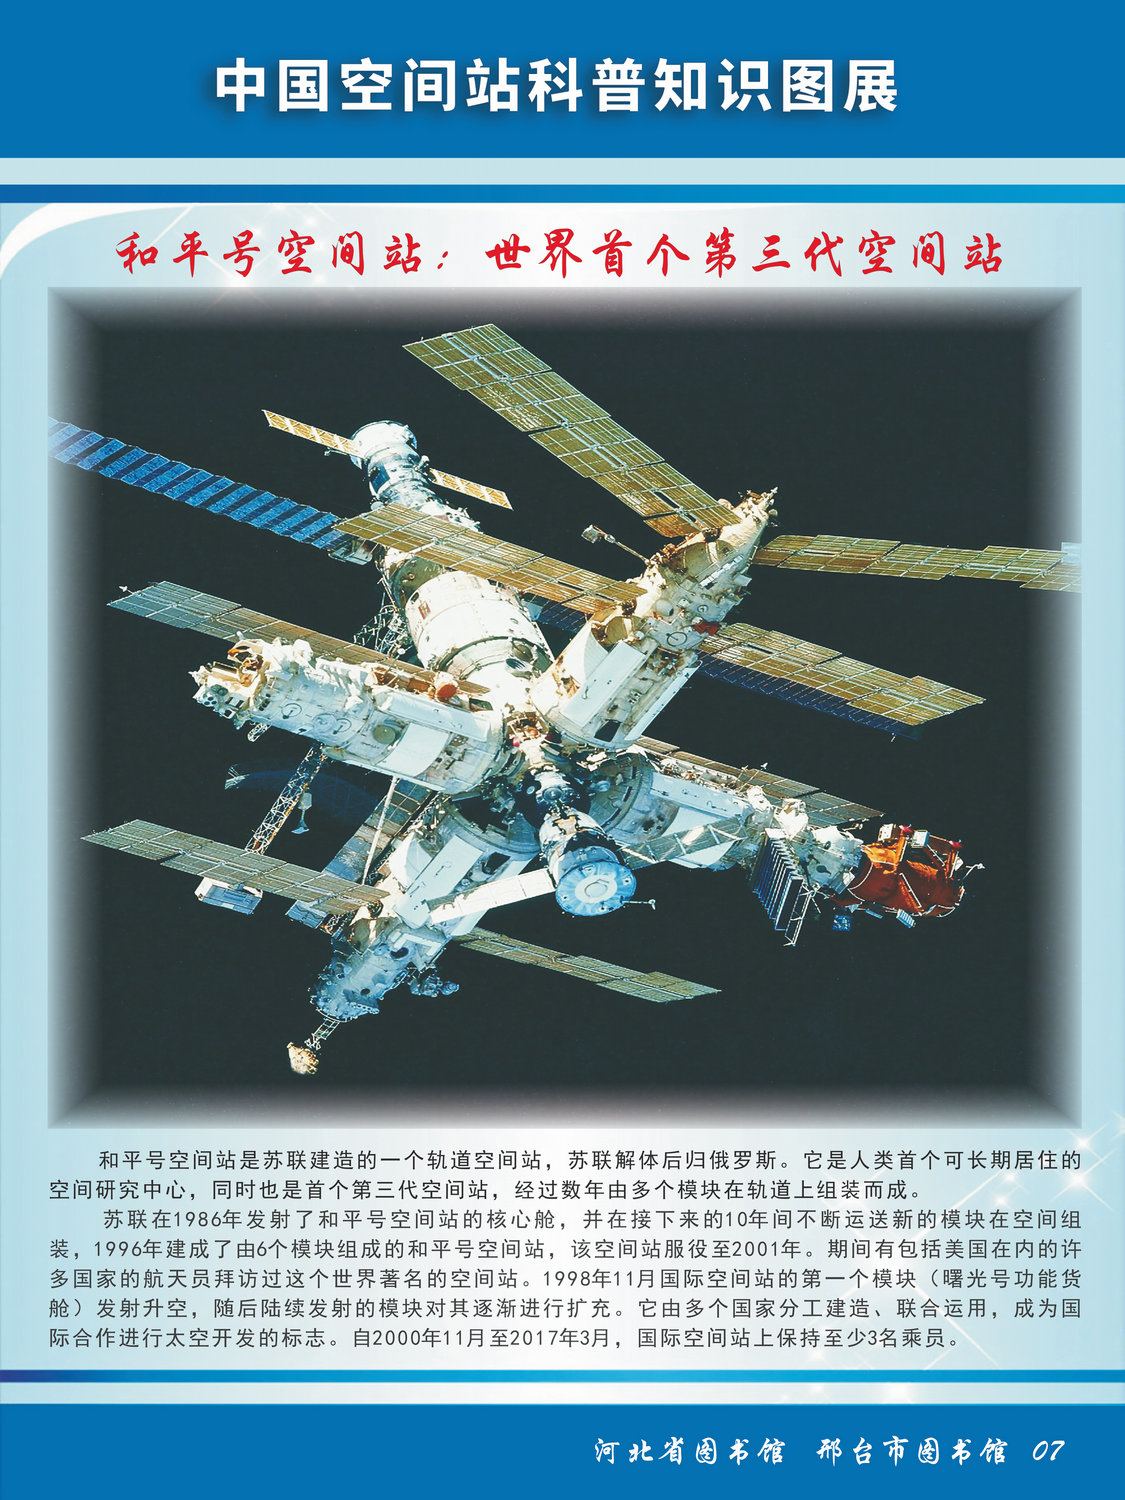 中国空间站科普知识图文展_图7